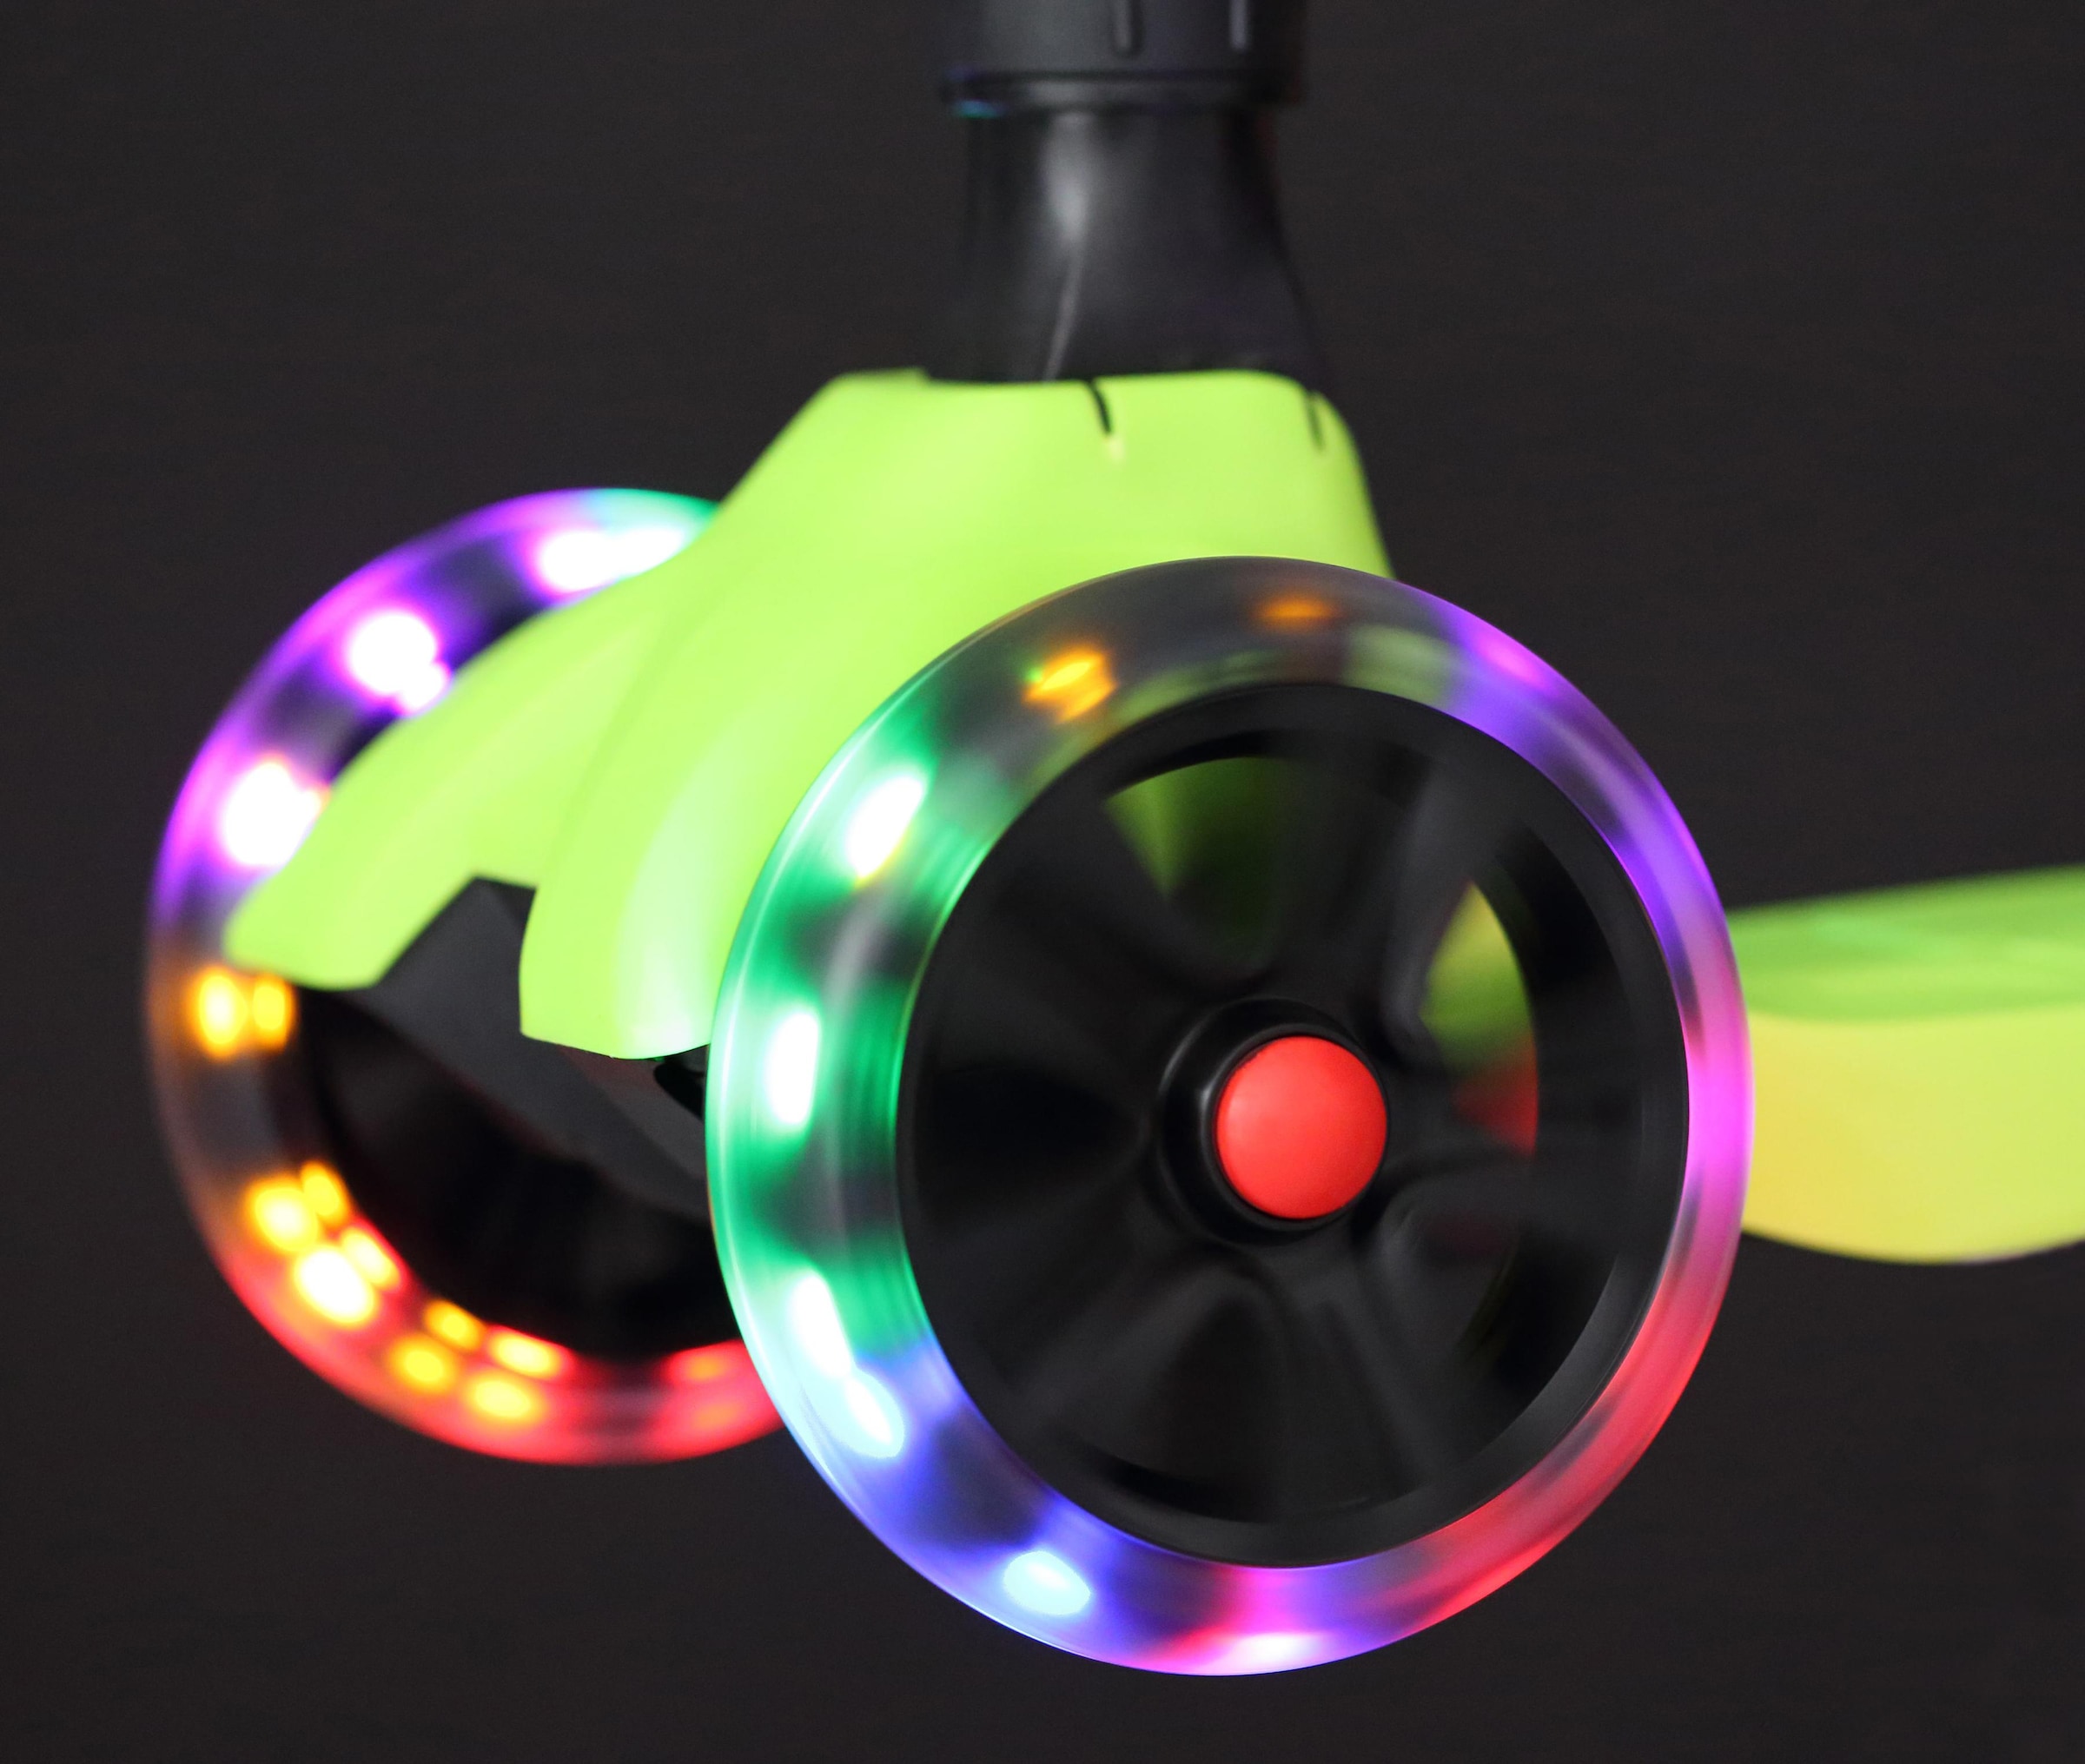 Star-Scooter Dreiradscooter mit bunter LED-Beleuchtung | BAUR